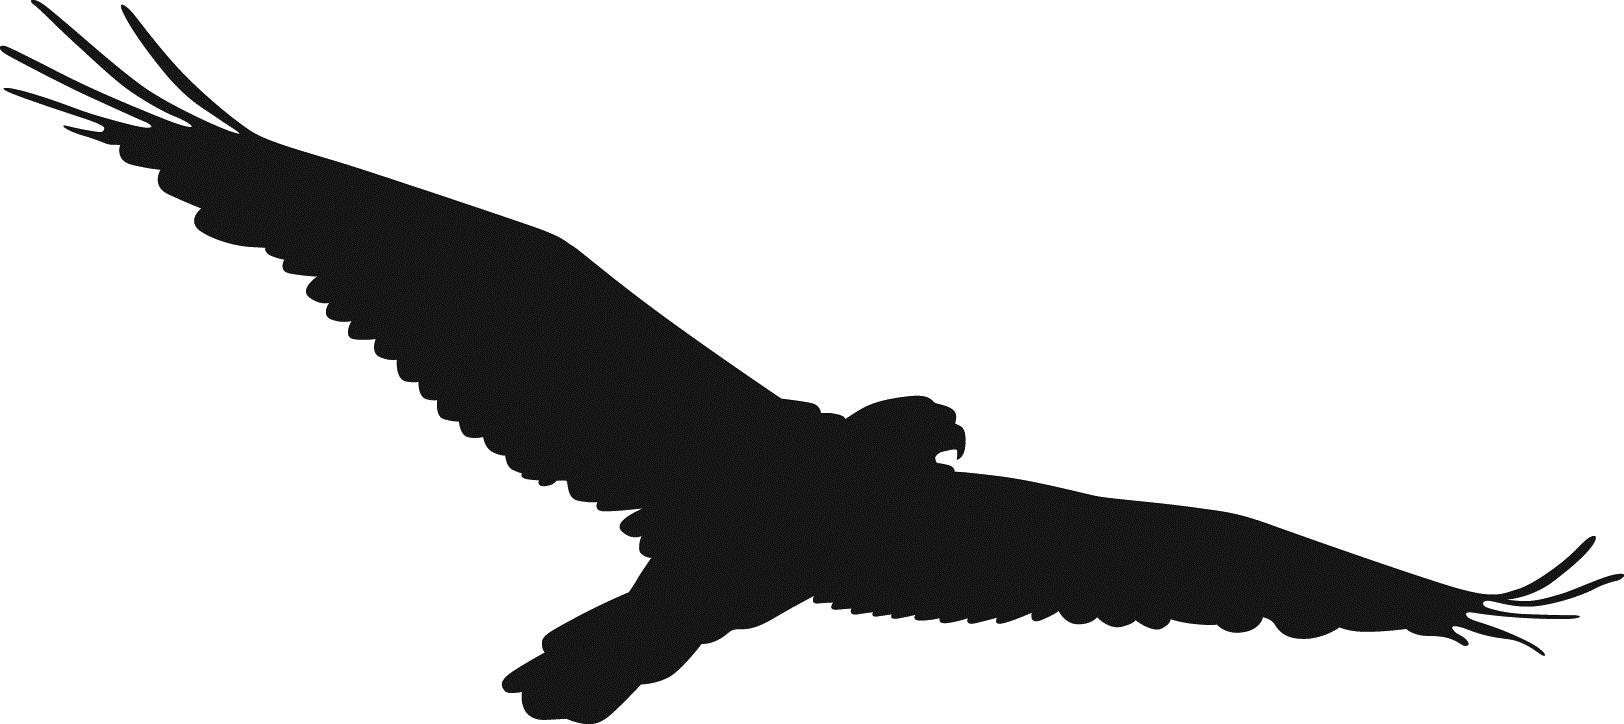 Hawk clip art at vector clip art free image